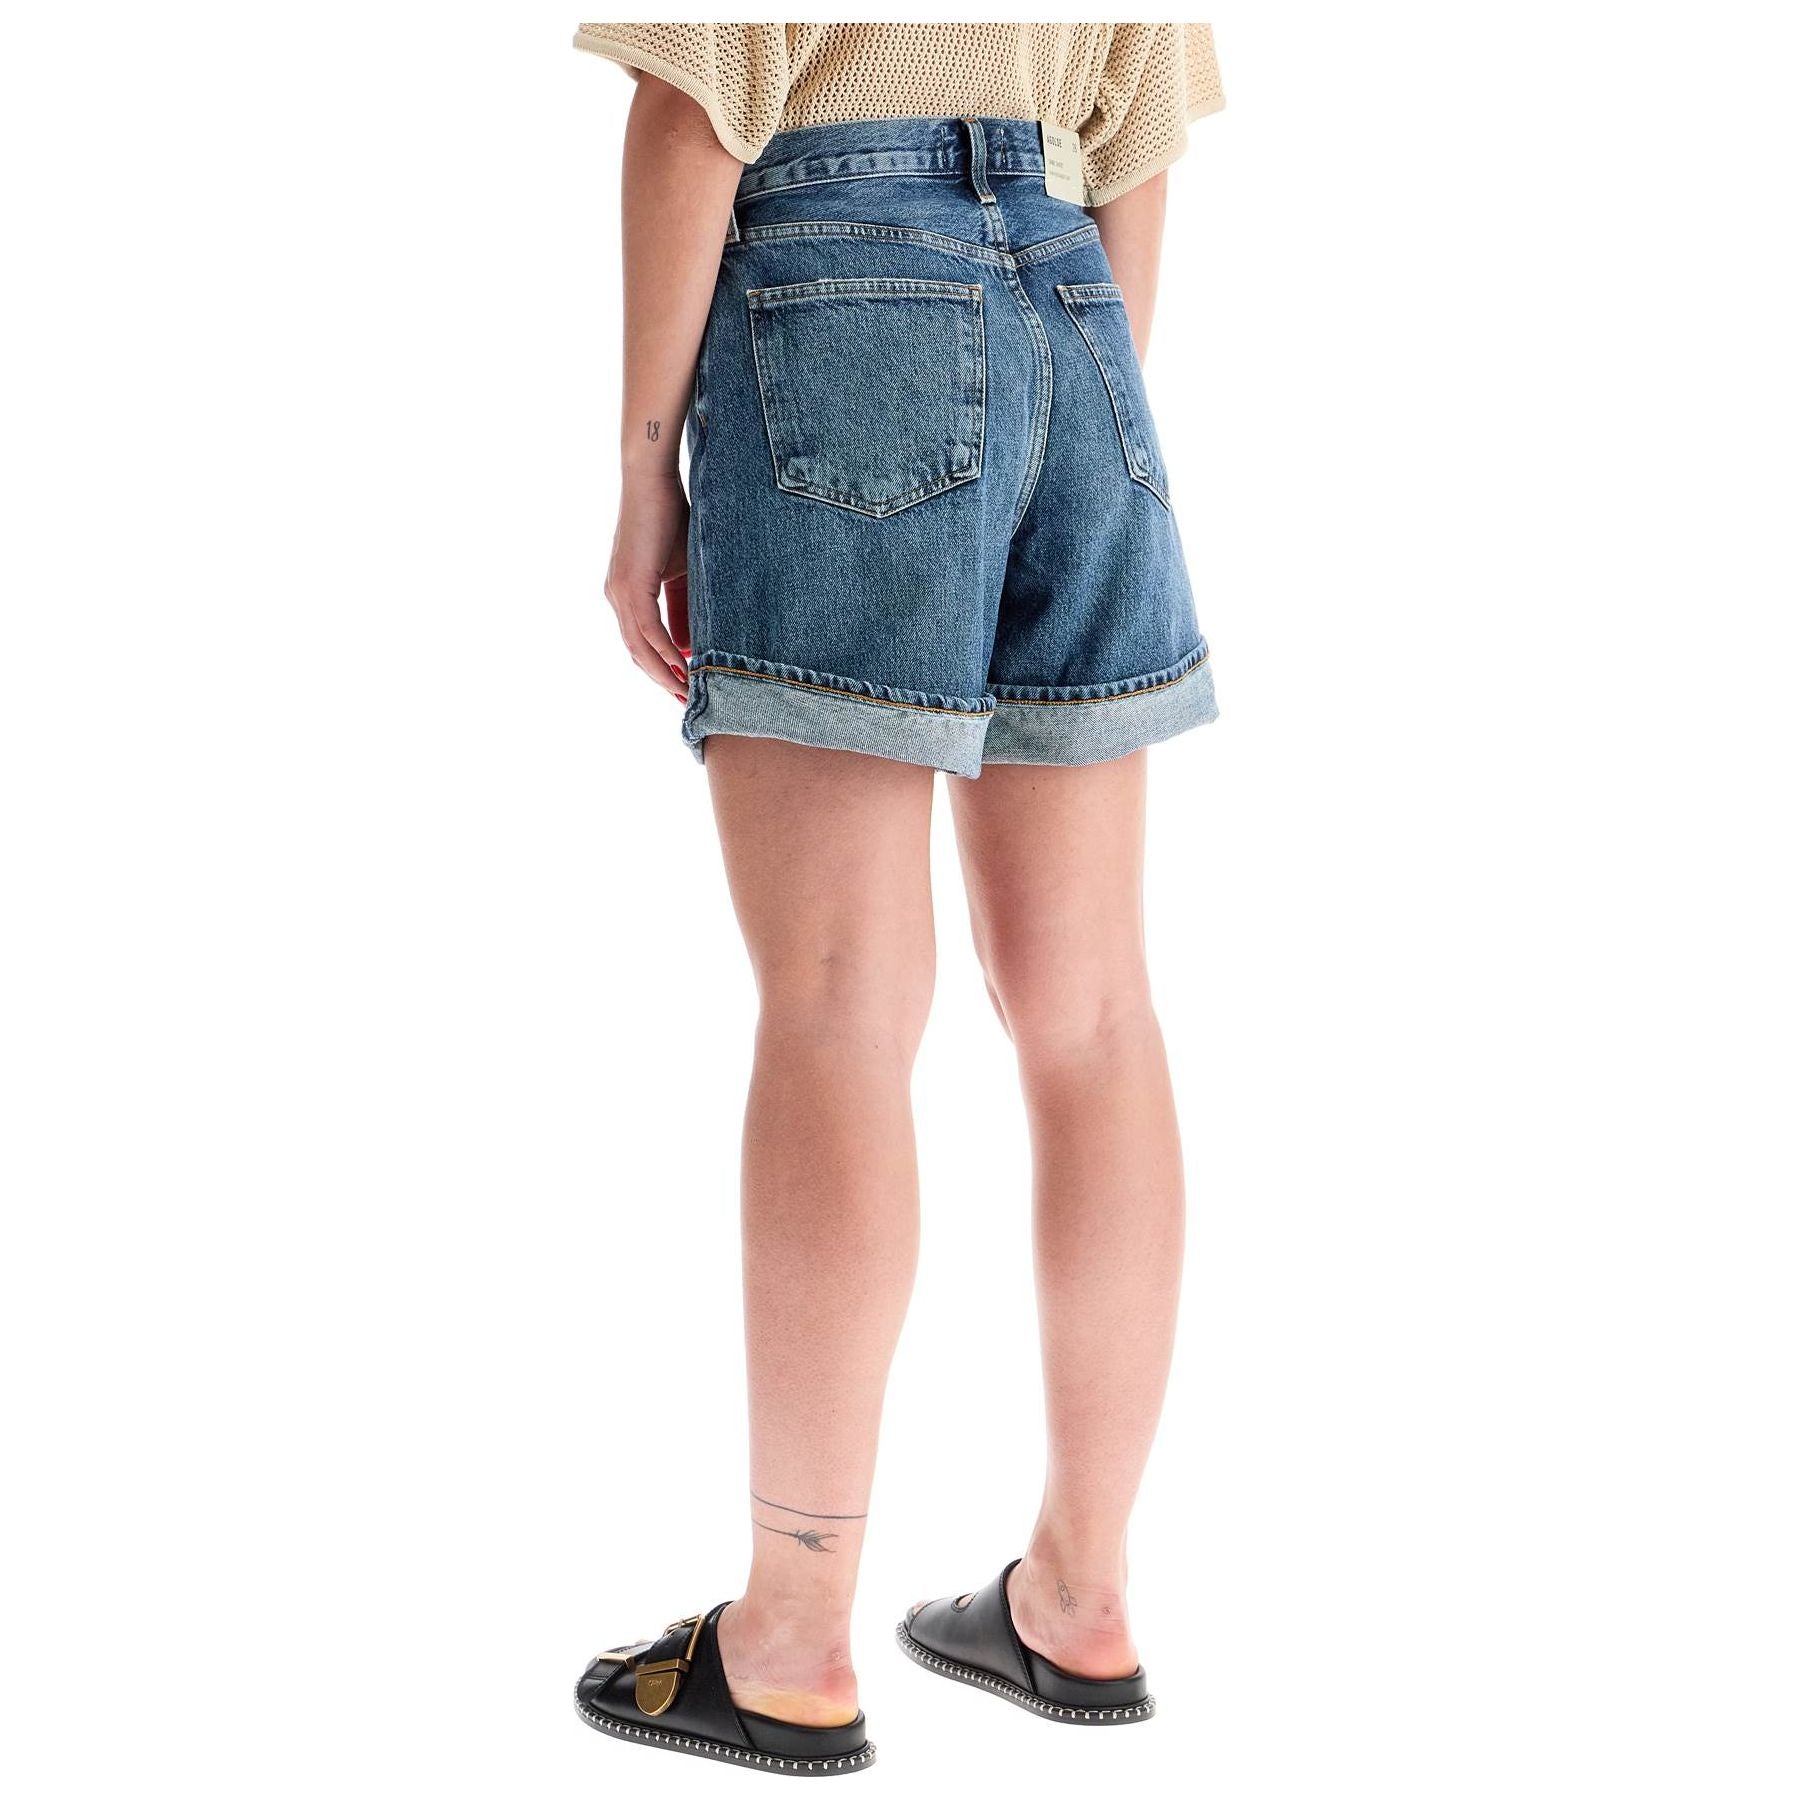 Women's Denim Shorts For